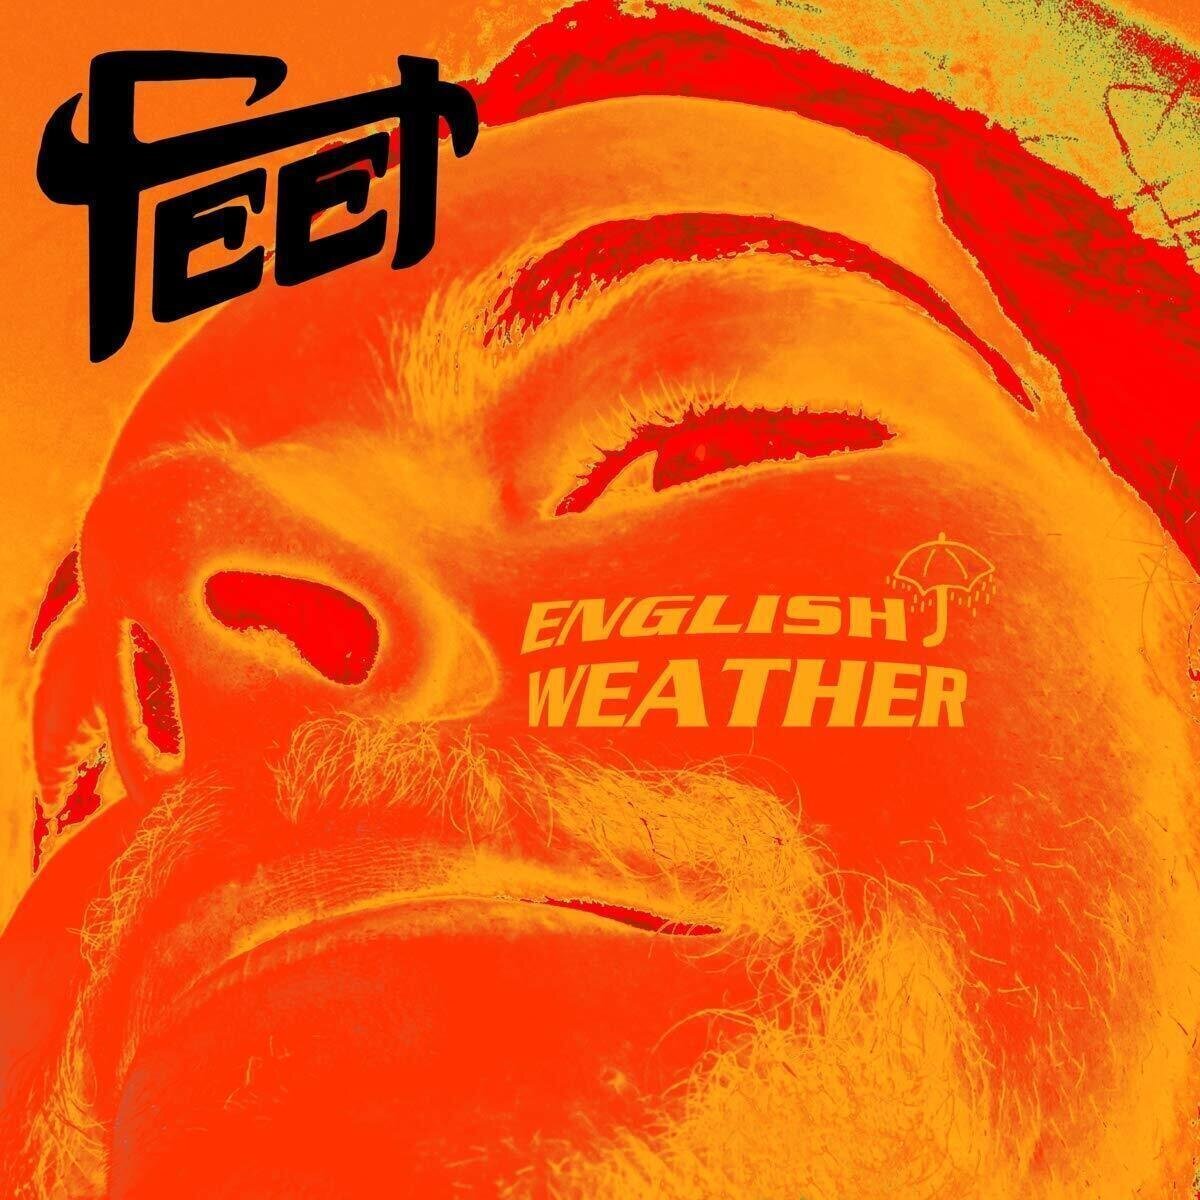 LP deska Feet - English Weather (Picture Disc) (LP)